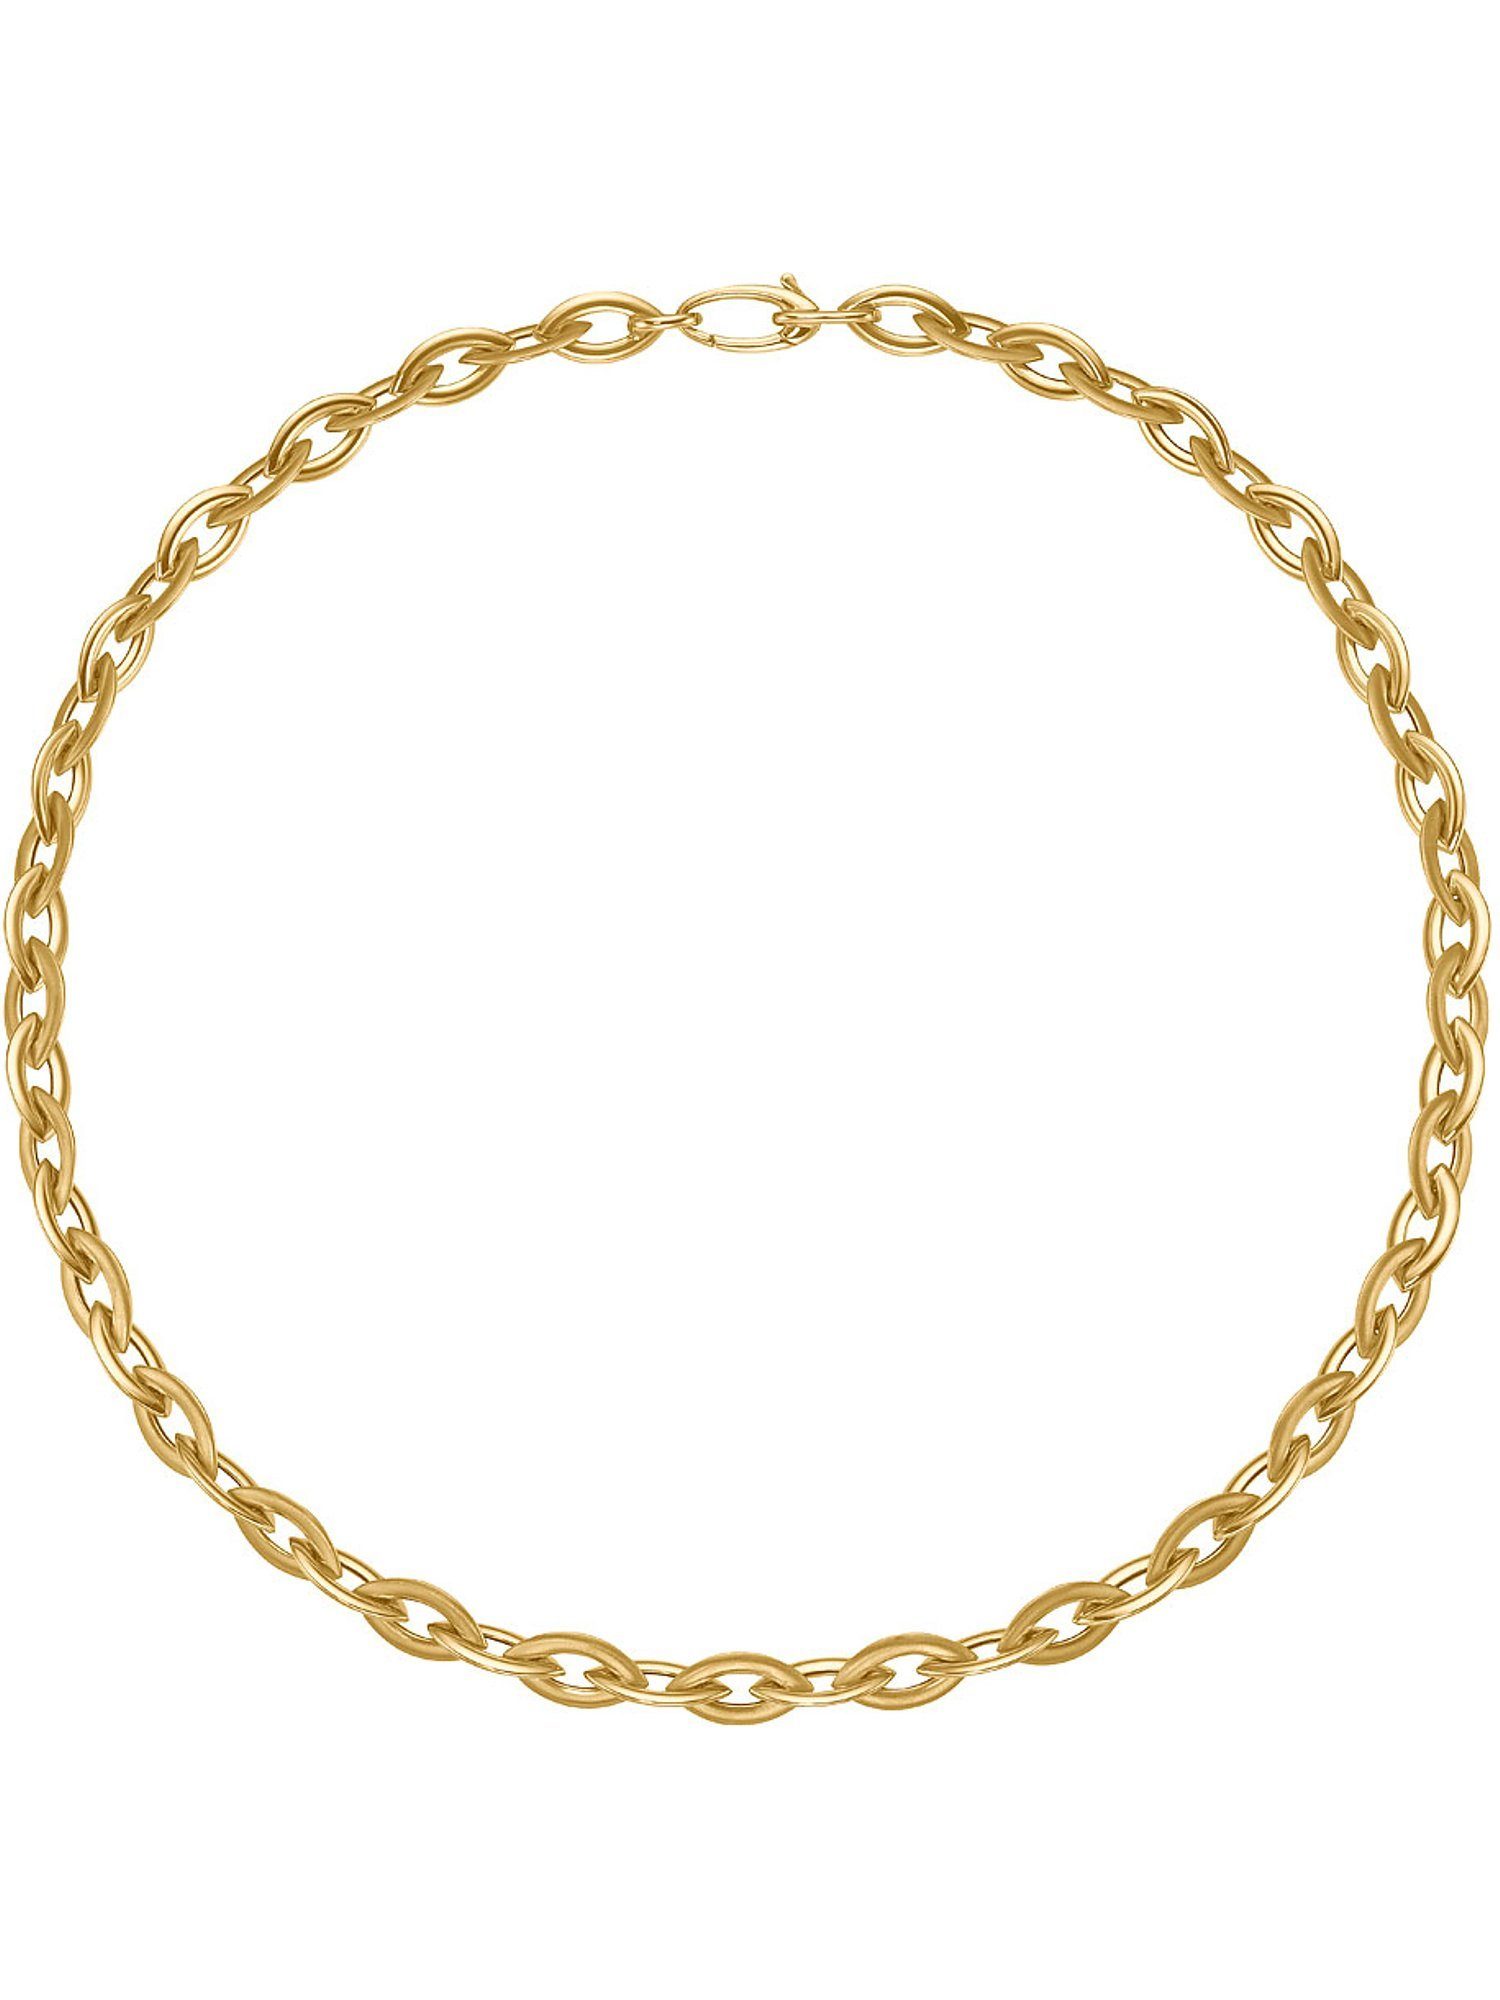 CHRIST Goldkette »CHRIST Damen-Kette 585er Gelbgold« online kaufen | OTTO